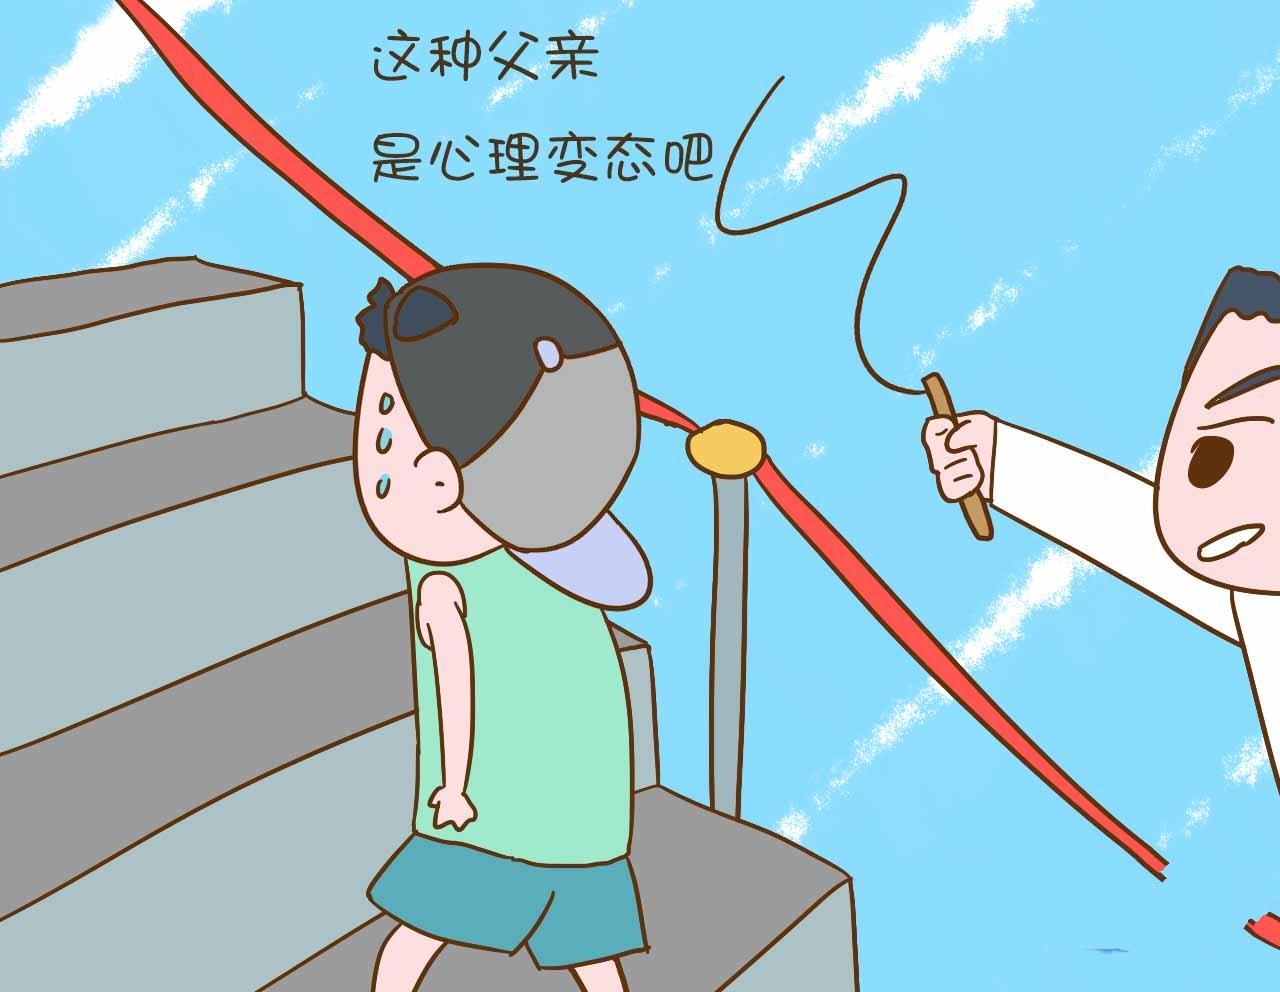 老爸用竹条鞭策儿子爬天梯,到底是教育孩子还